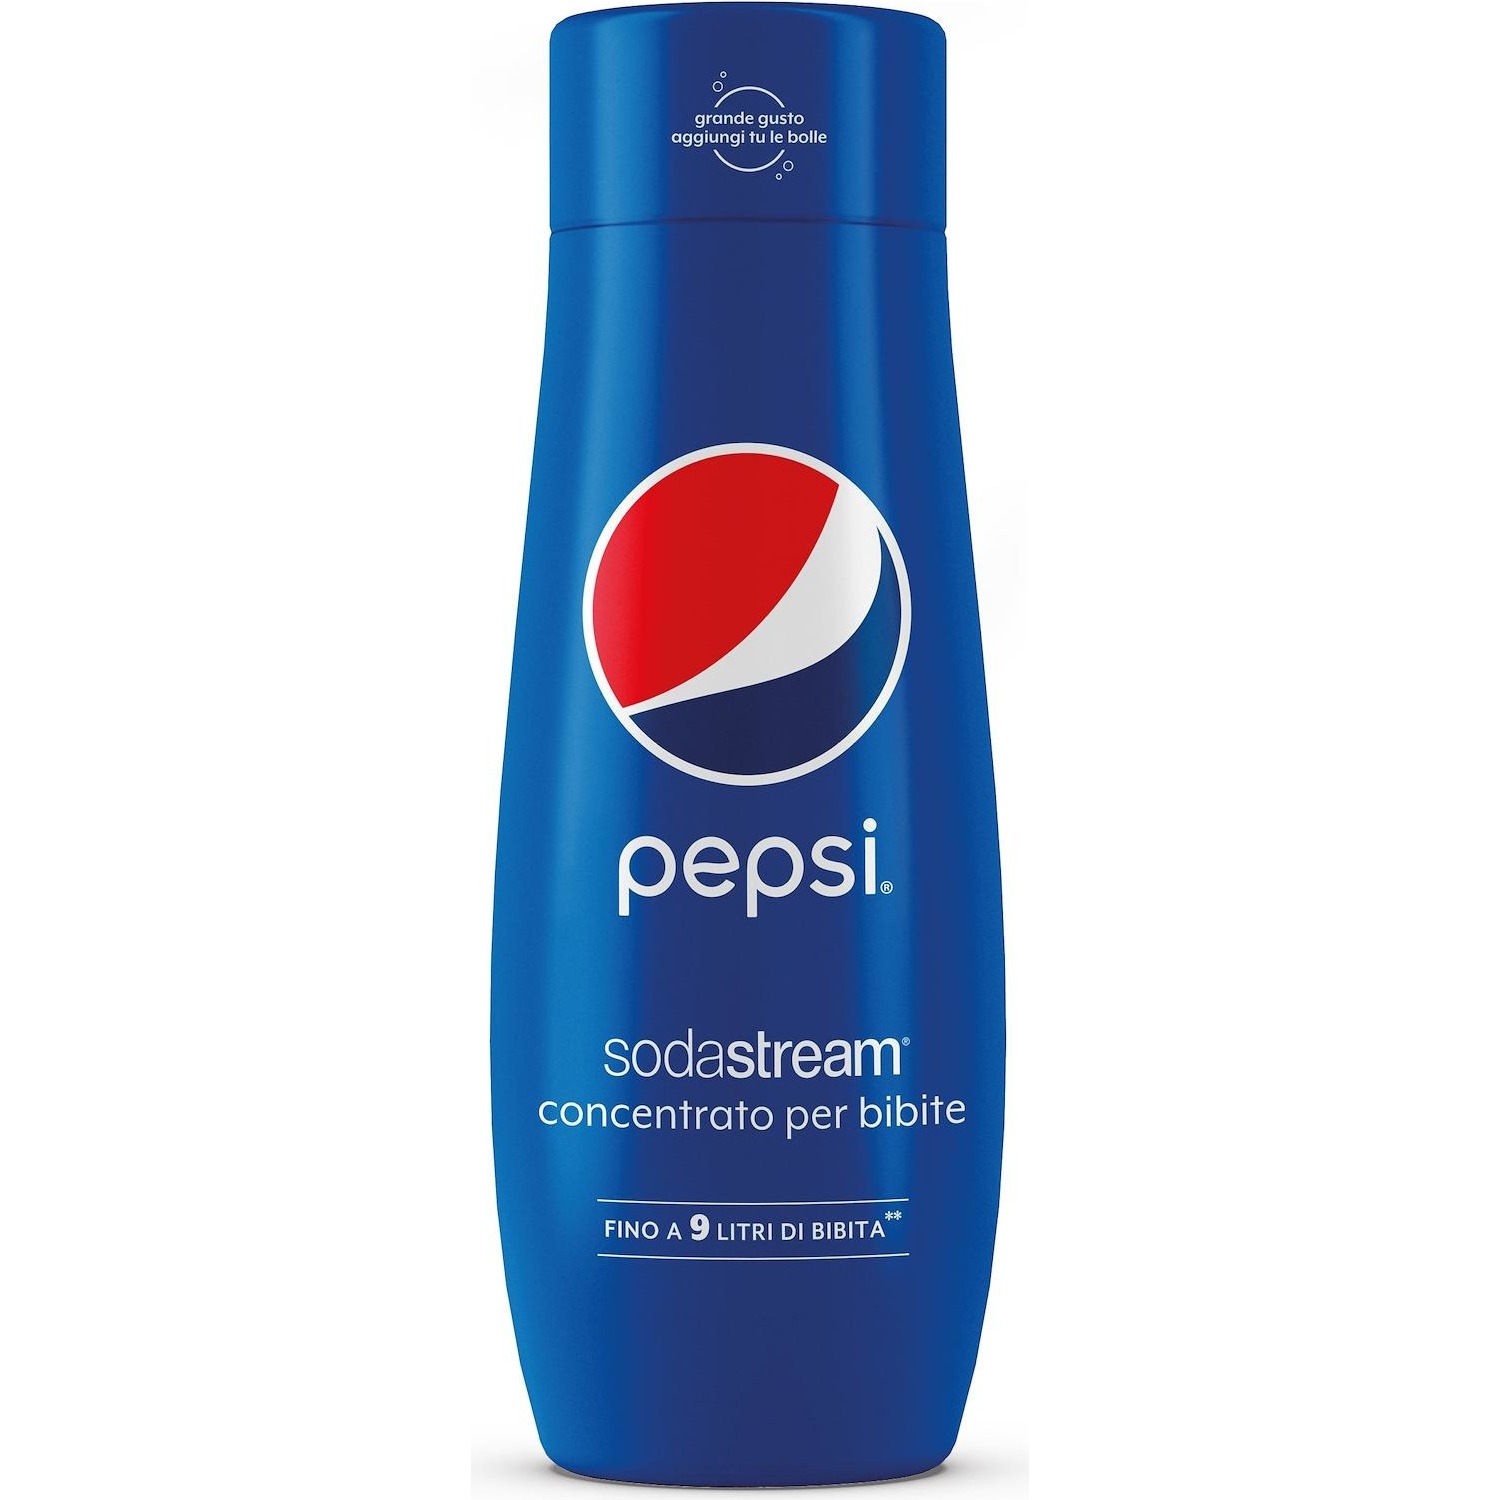 Immagine per Concentrato Sodastream al gusto di Pepsi 440ml da DIMOStore